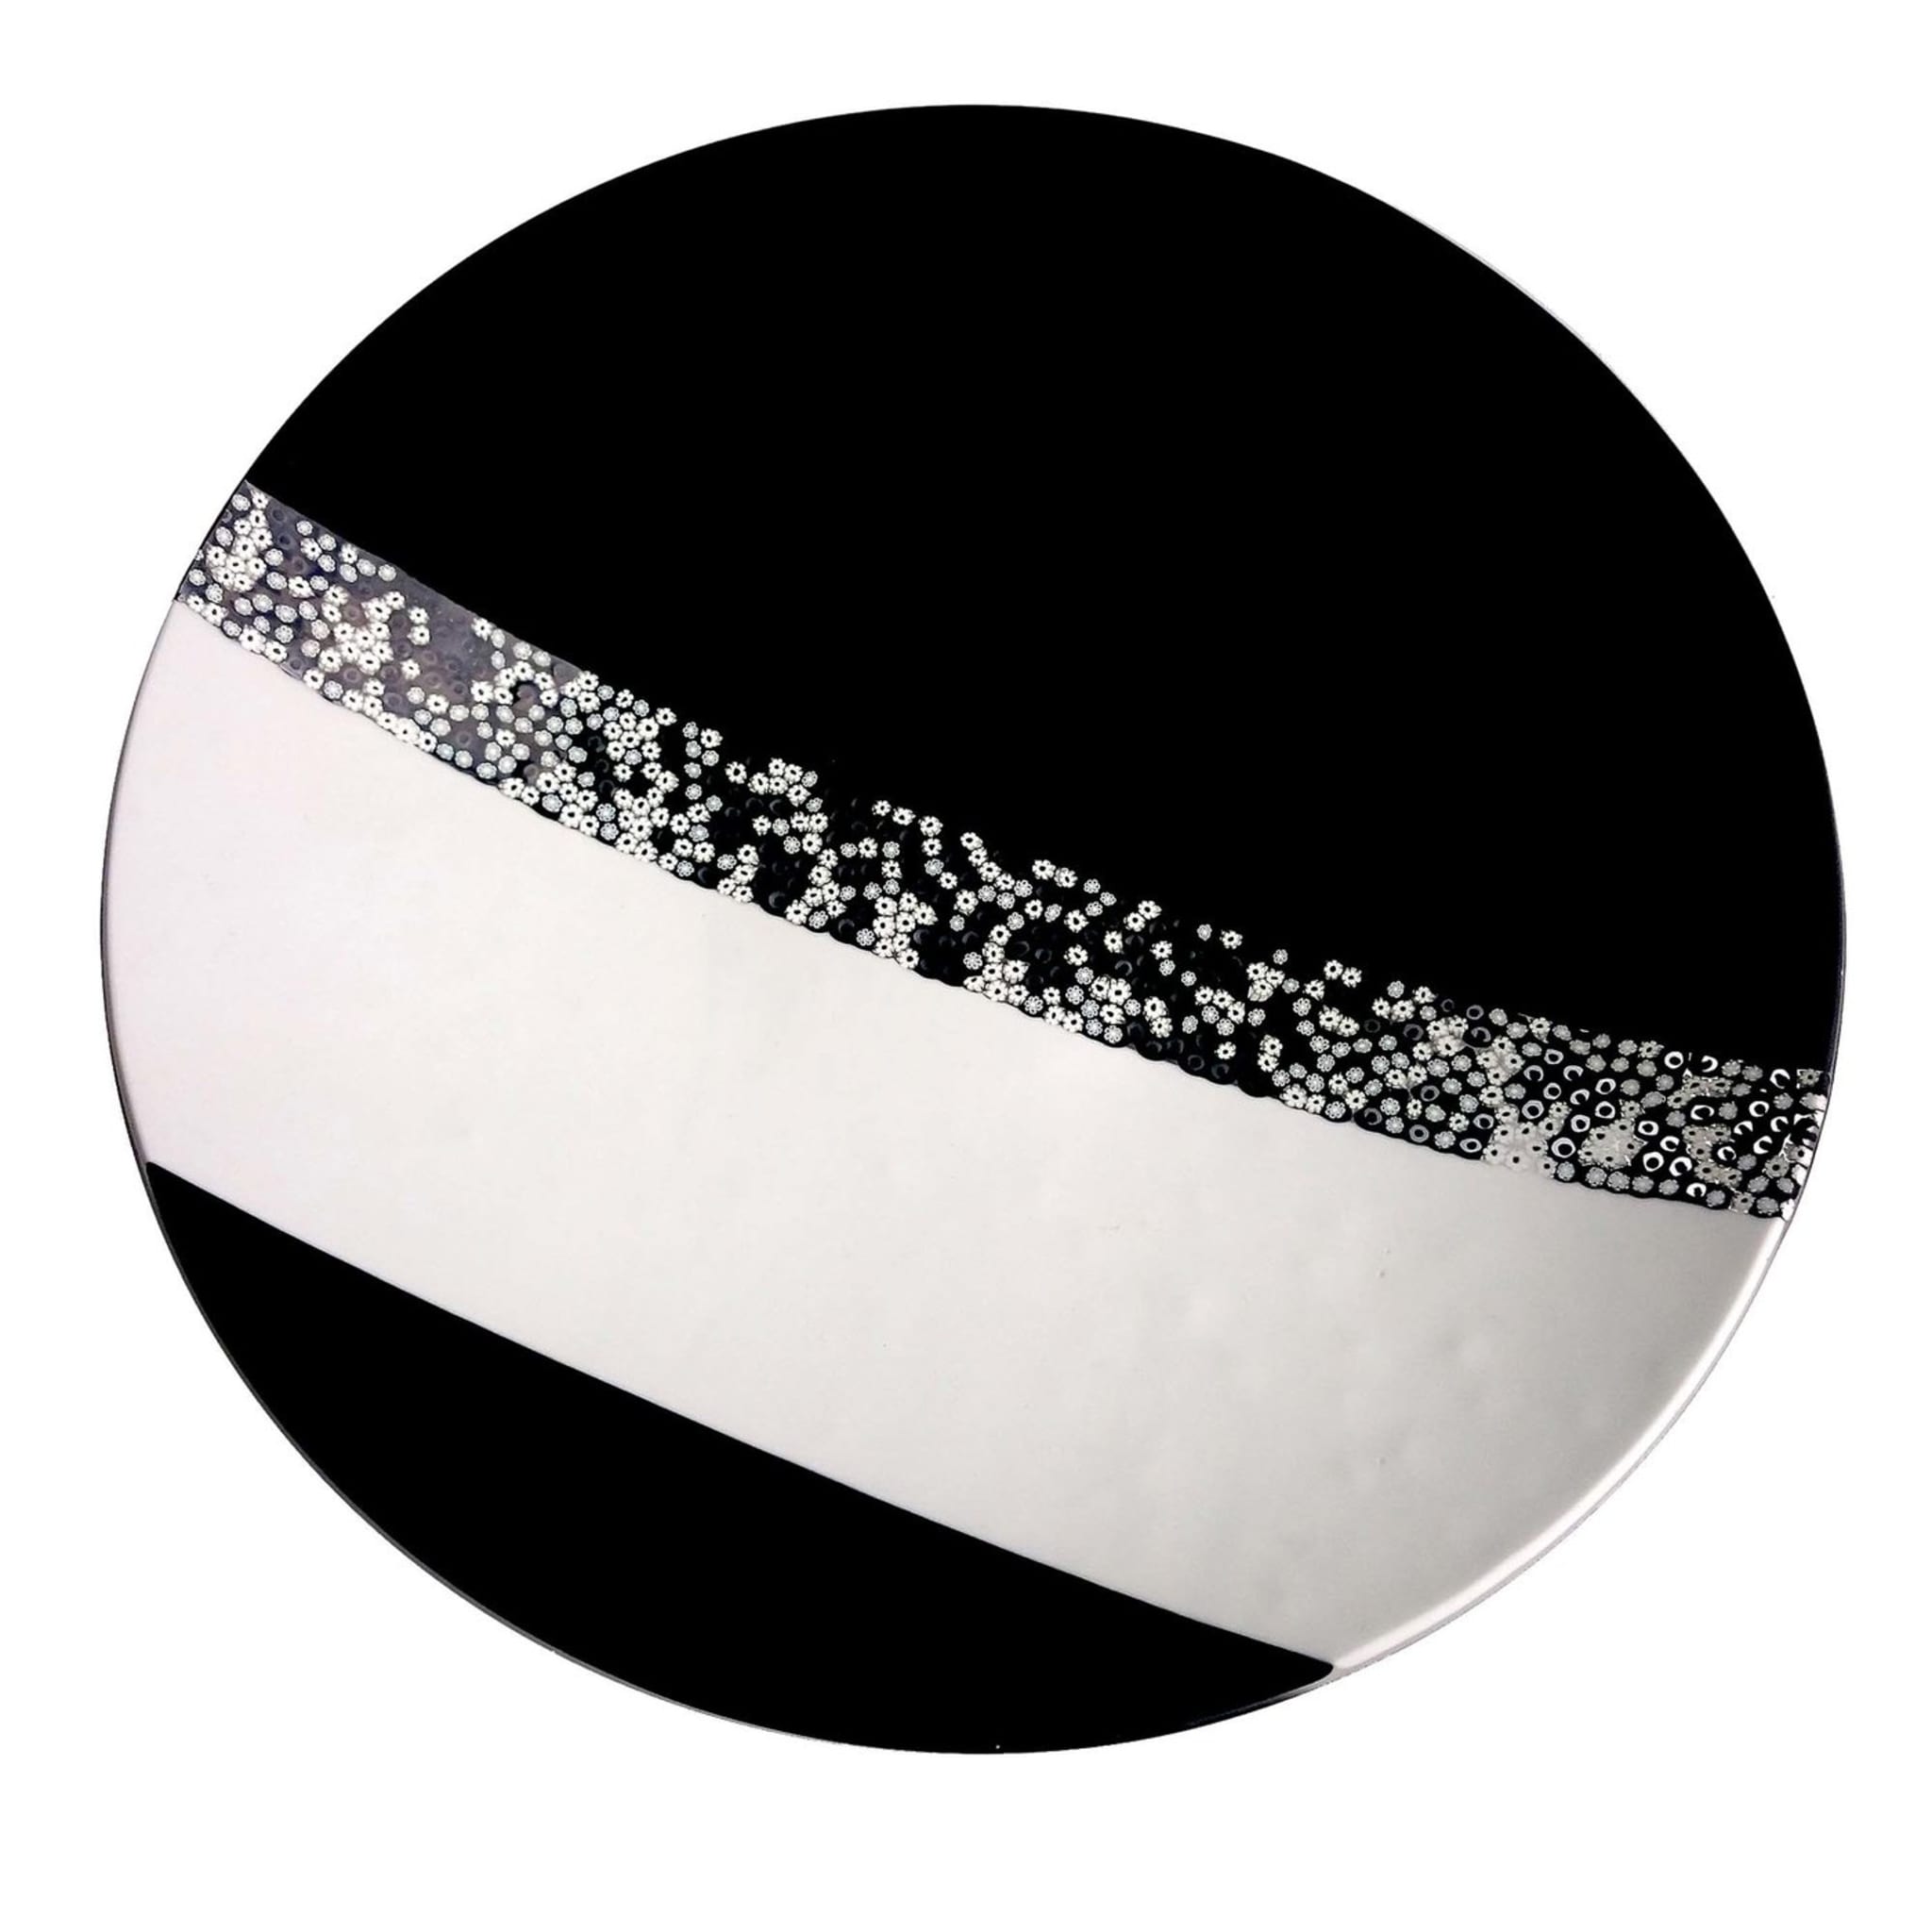 Black & White Murano Glass Decorative Plate by Stefano Birello - Main view